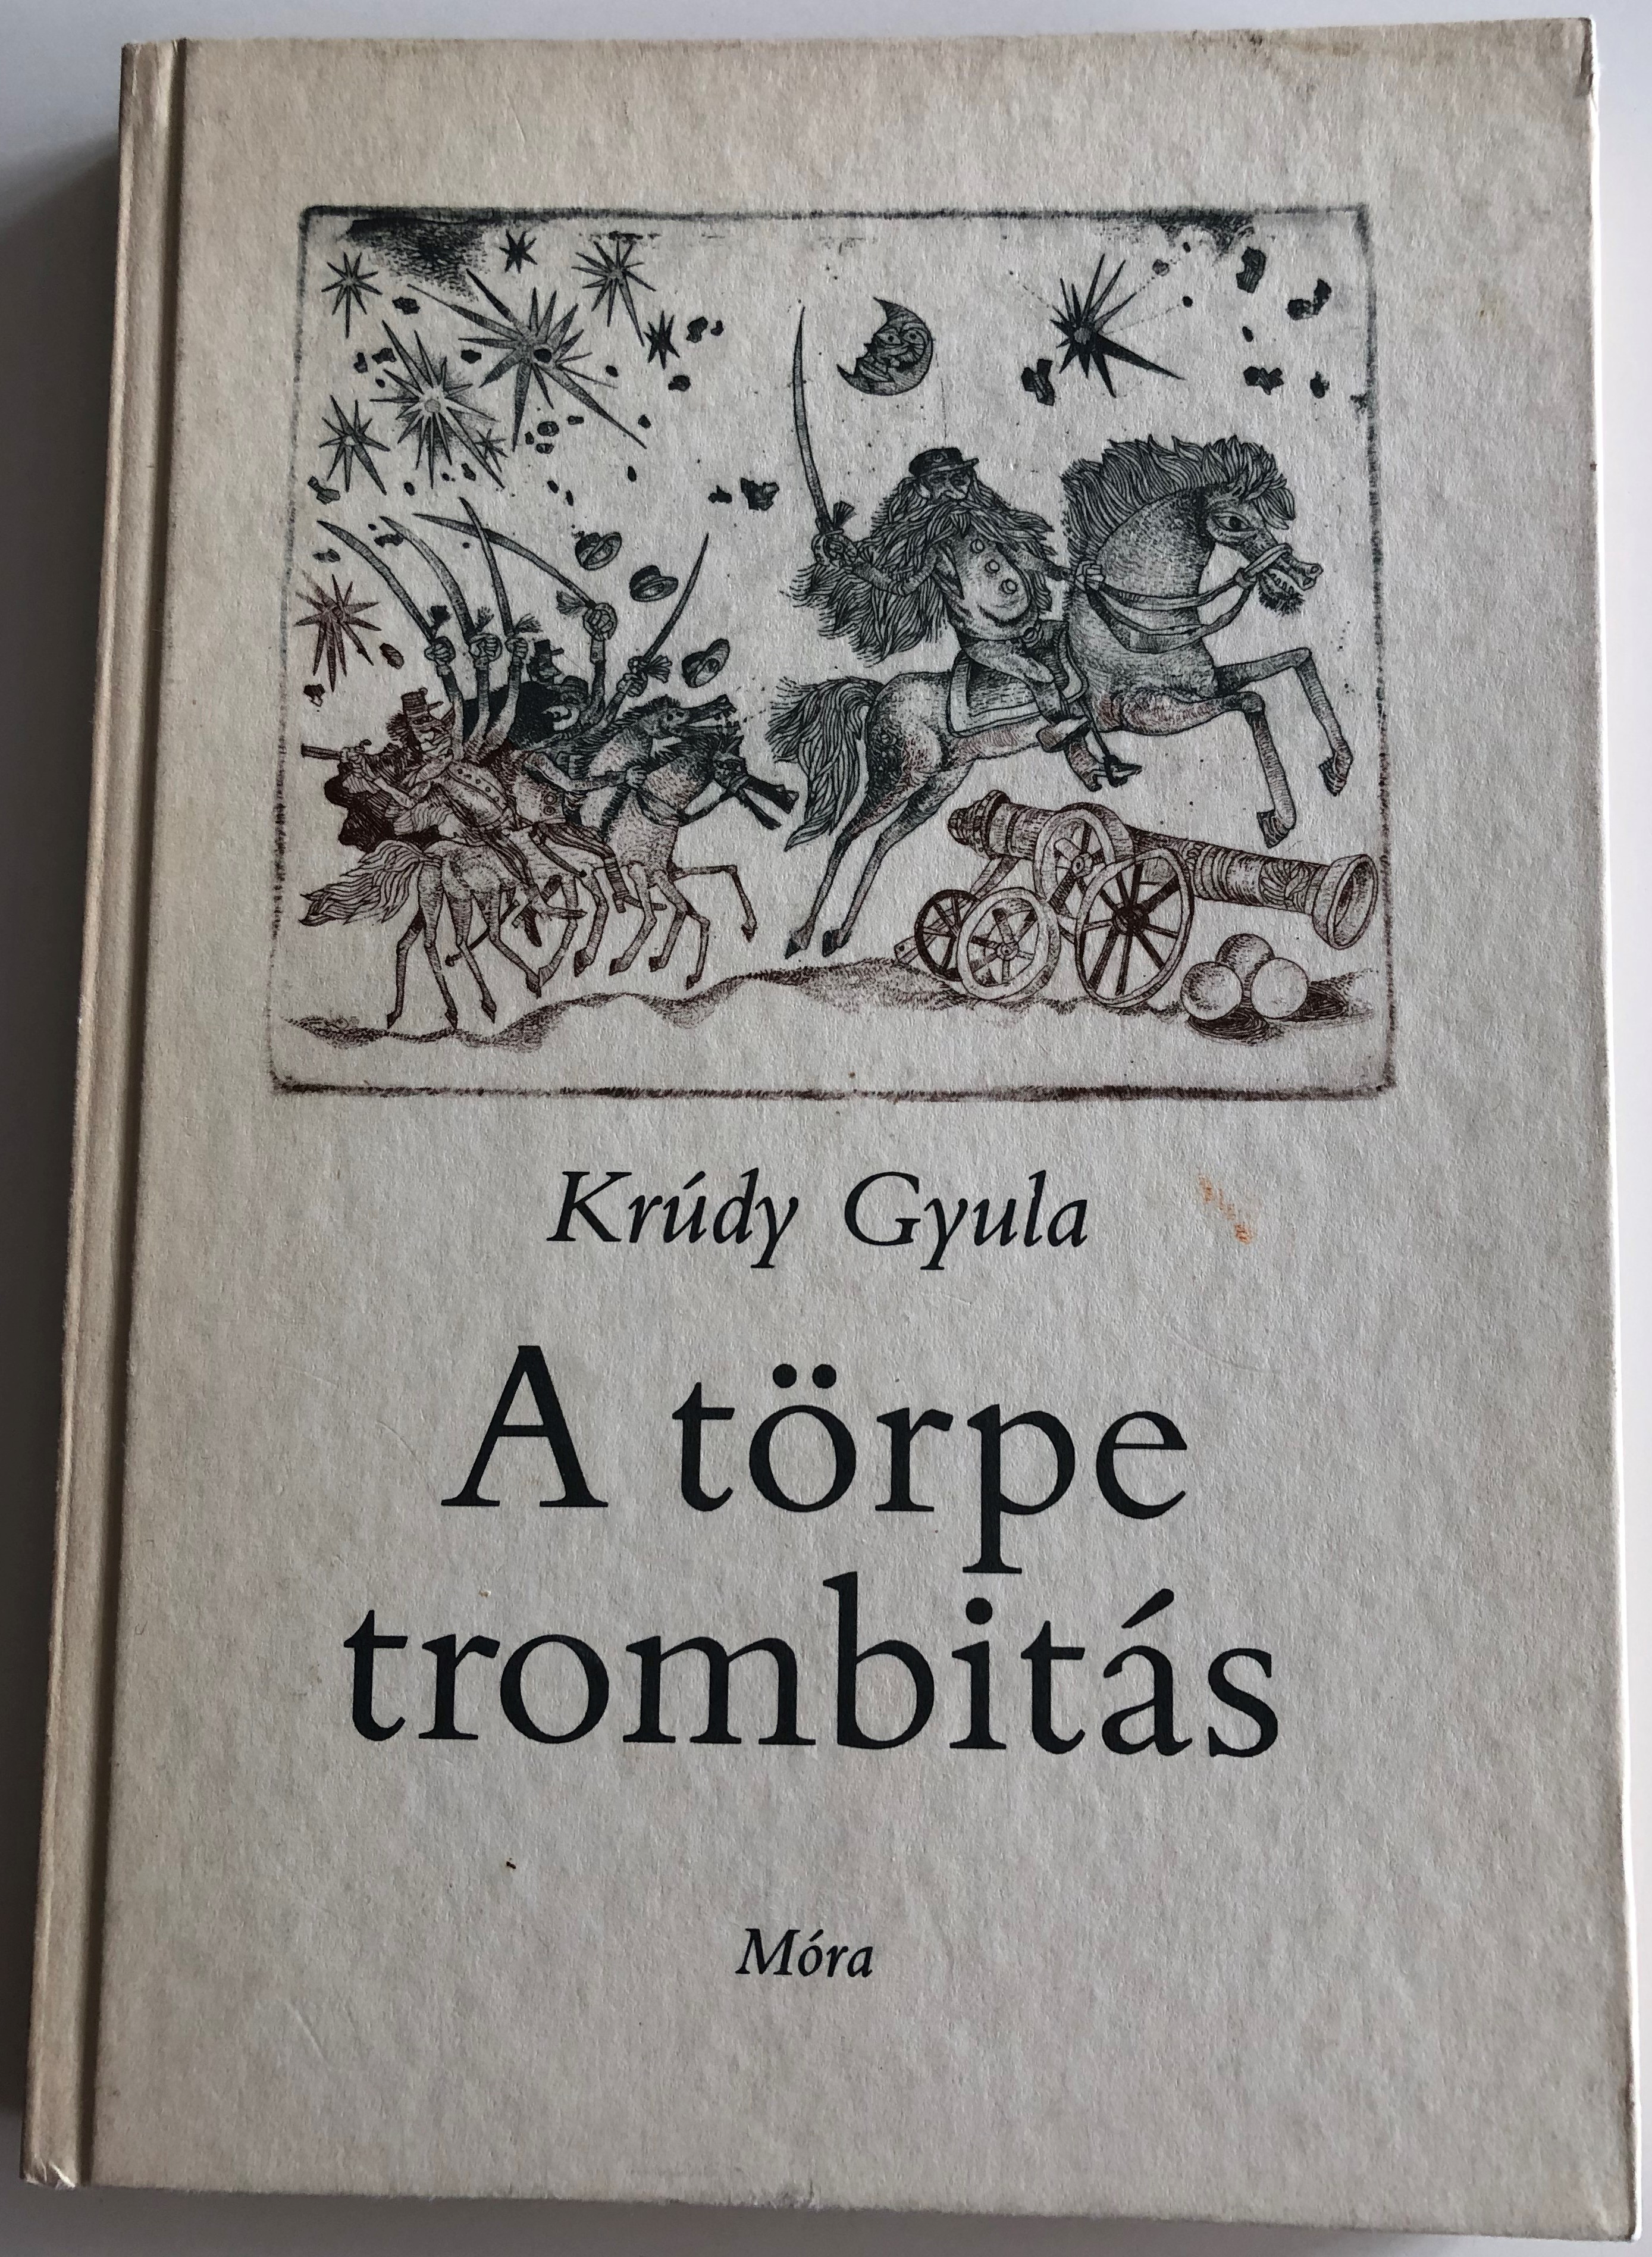 A törpe trombitás by Krúdy Gyula 1.JPG